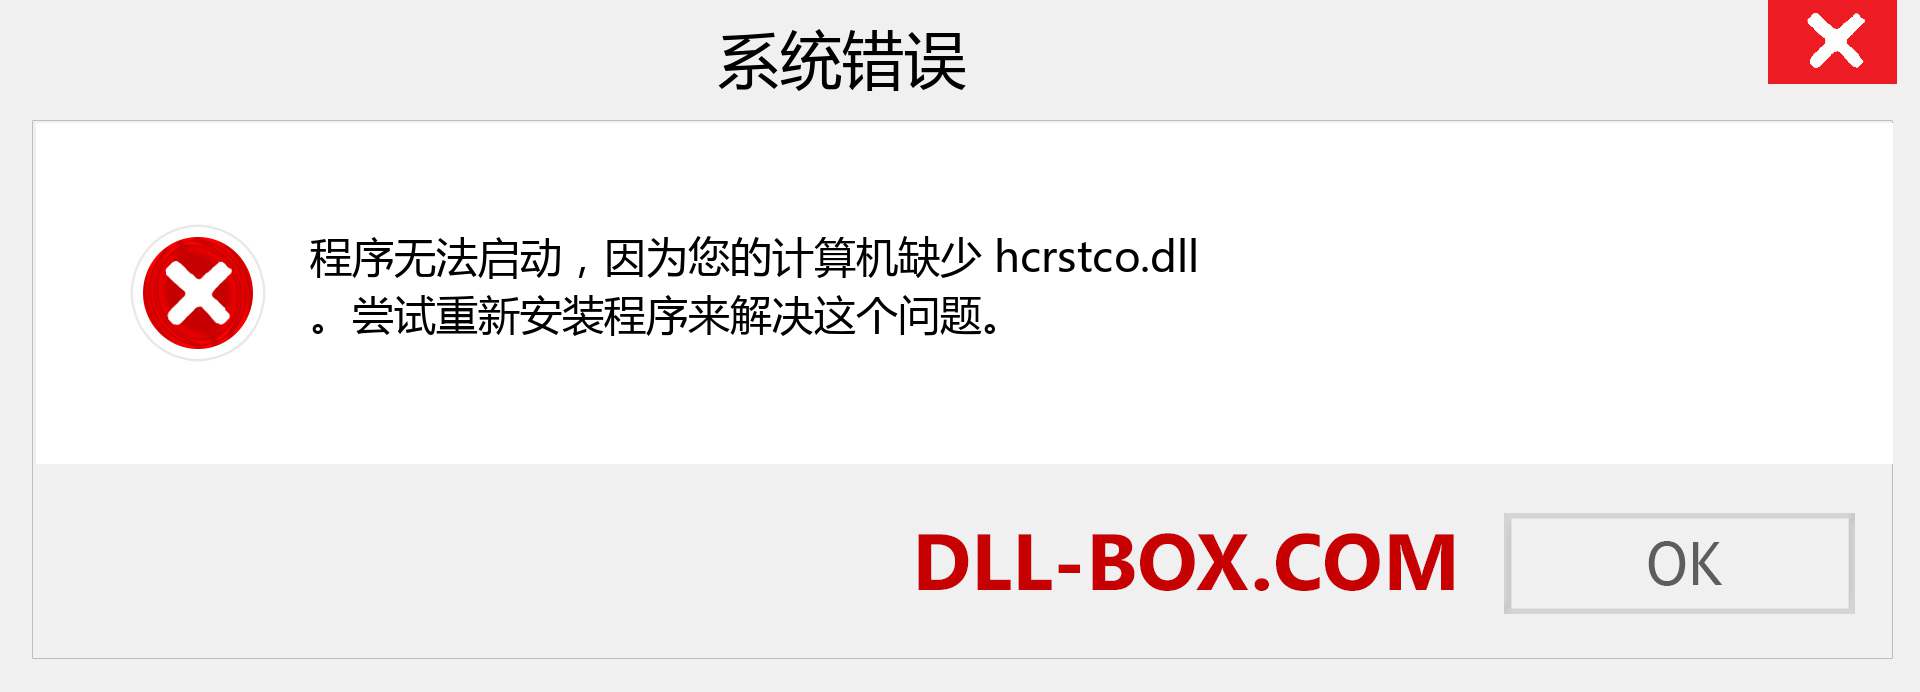 hcrstco.dll 文件丢失？。 适用于 Windows 7、8、10 的下载 - 修复 Windows、照片、图像上的 hcrstco dll 丢失错误